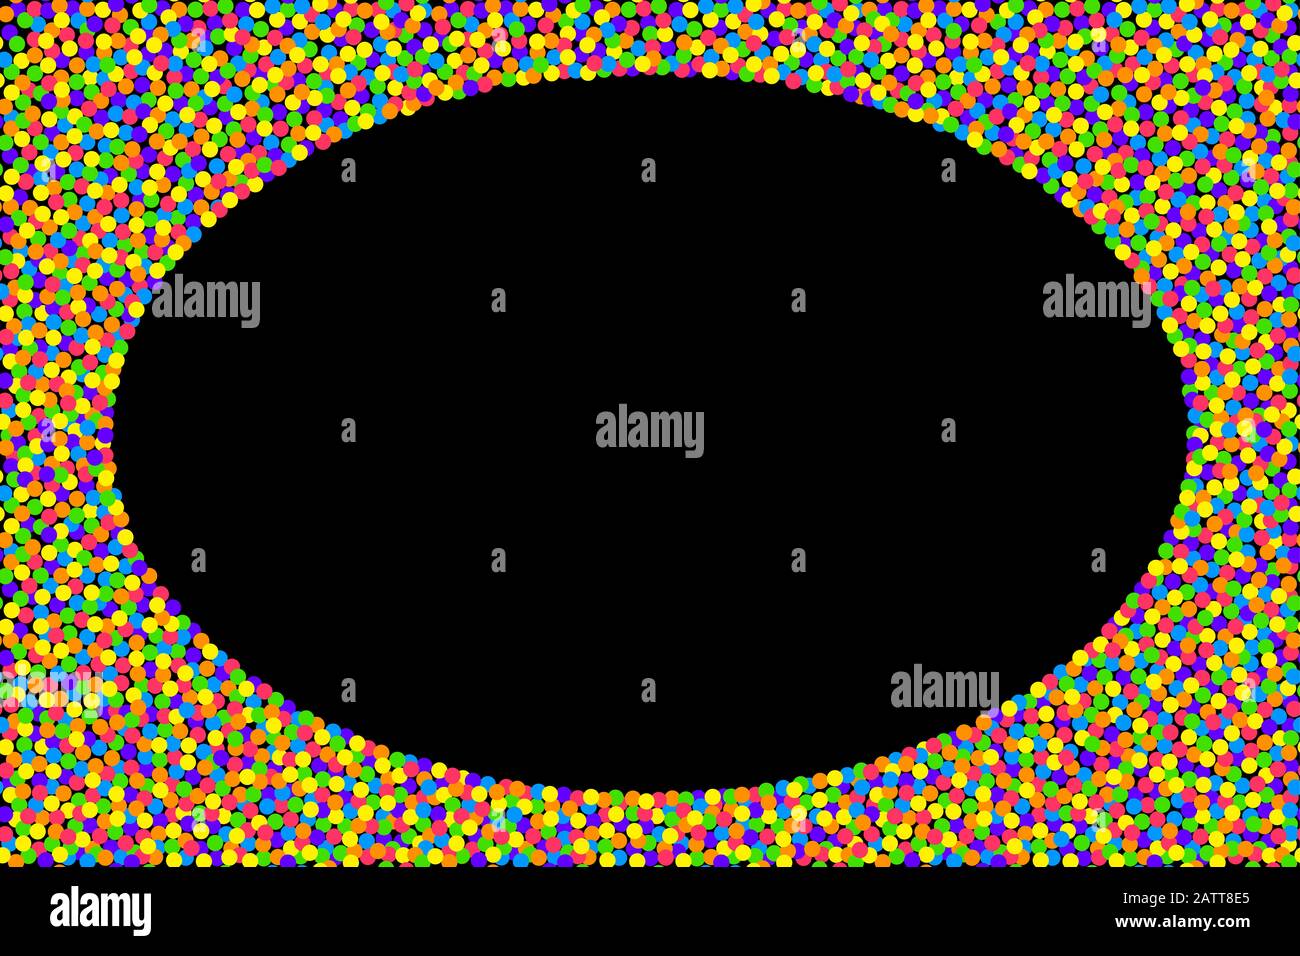 Cadre confettis coloré sur fond noir. Petits points en couleurs vives et saturées, répartis aléatoirement sur un rectangulaire noir, formant une ellipse. Banque D'Images